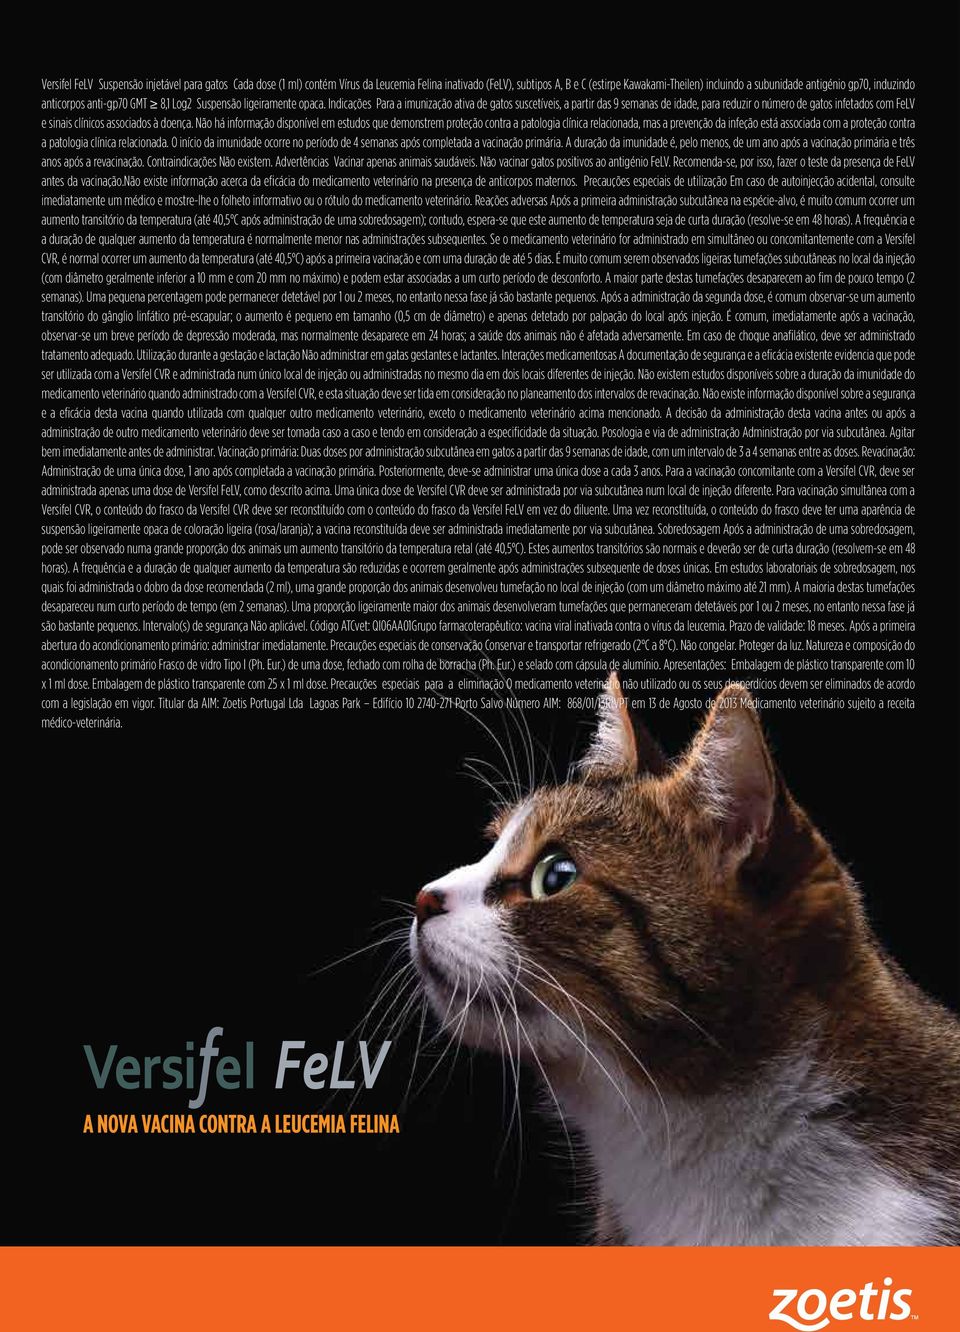 Indicações Para a imunização ativa de gatos suscetíveis, a partir das 9 semanas de idade, para reduzir o número de gatos infetados com FeLV e sinais clínicos associados à doença.